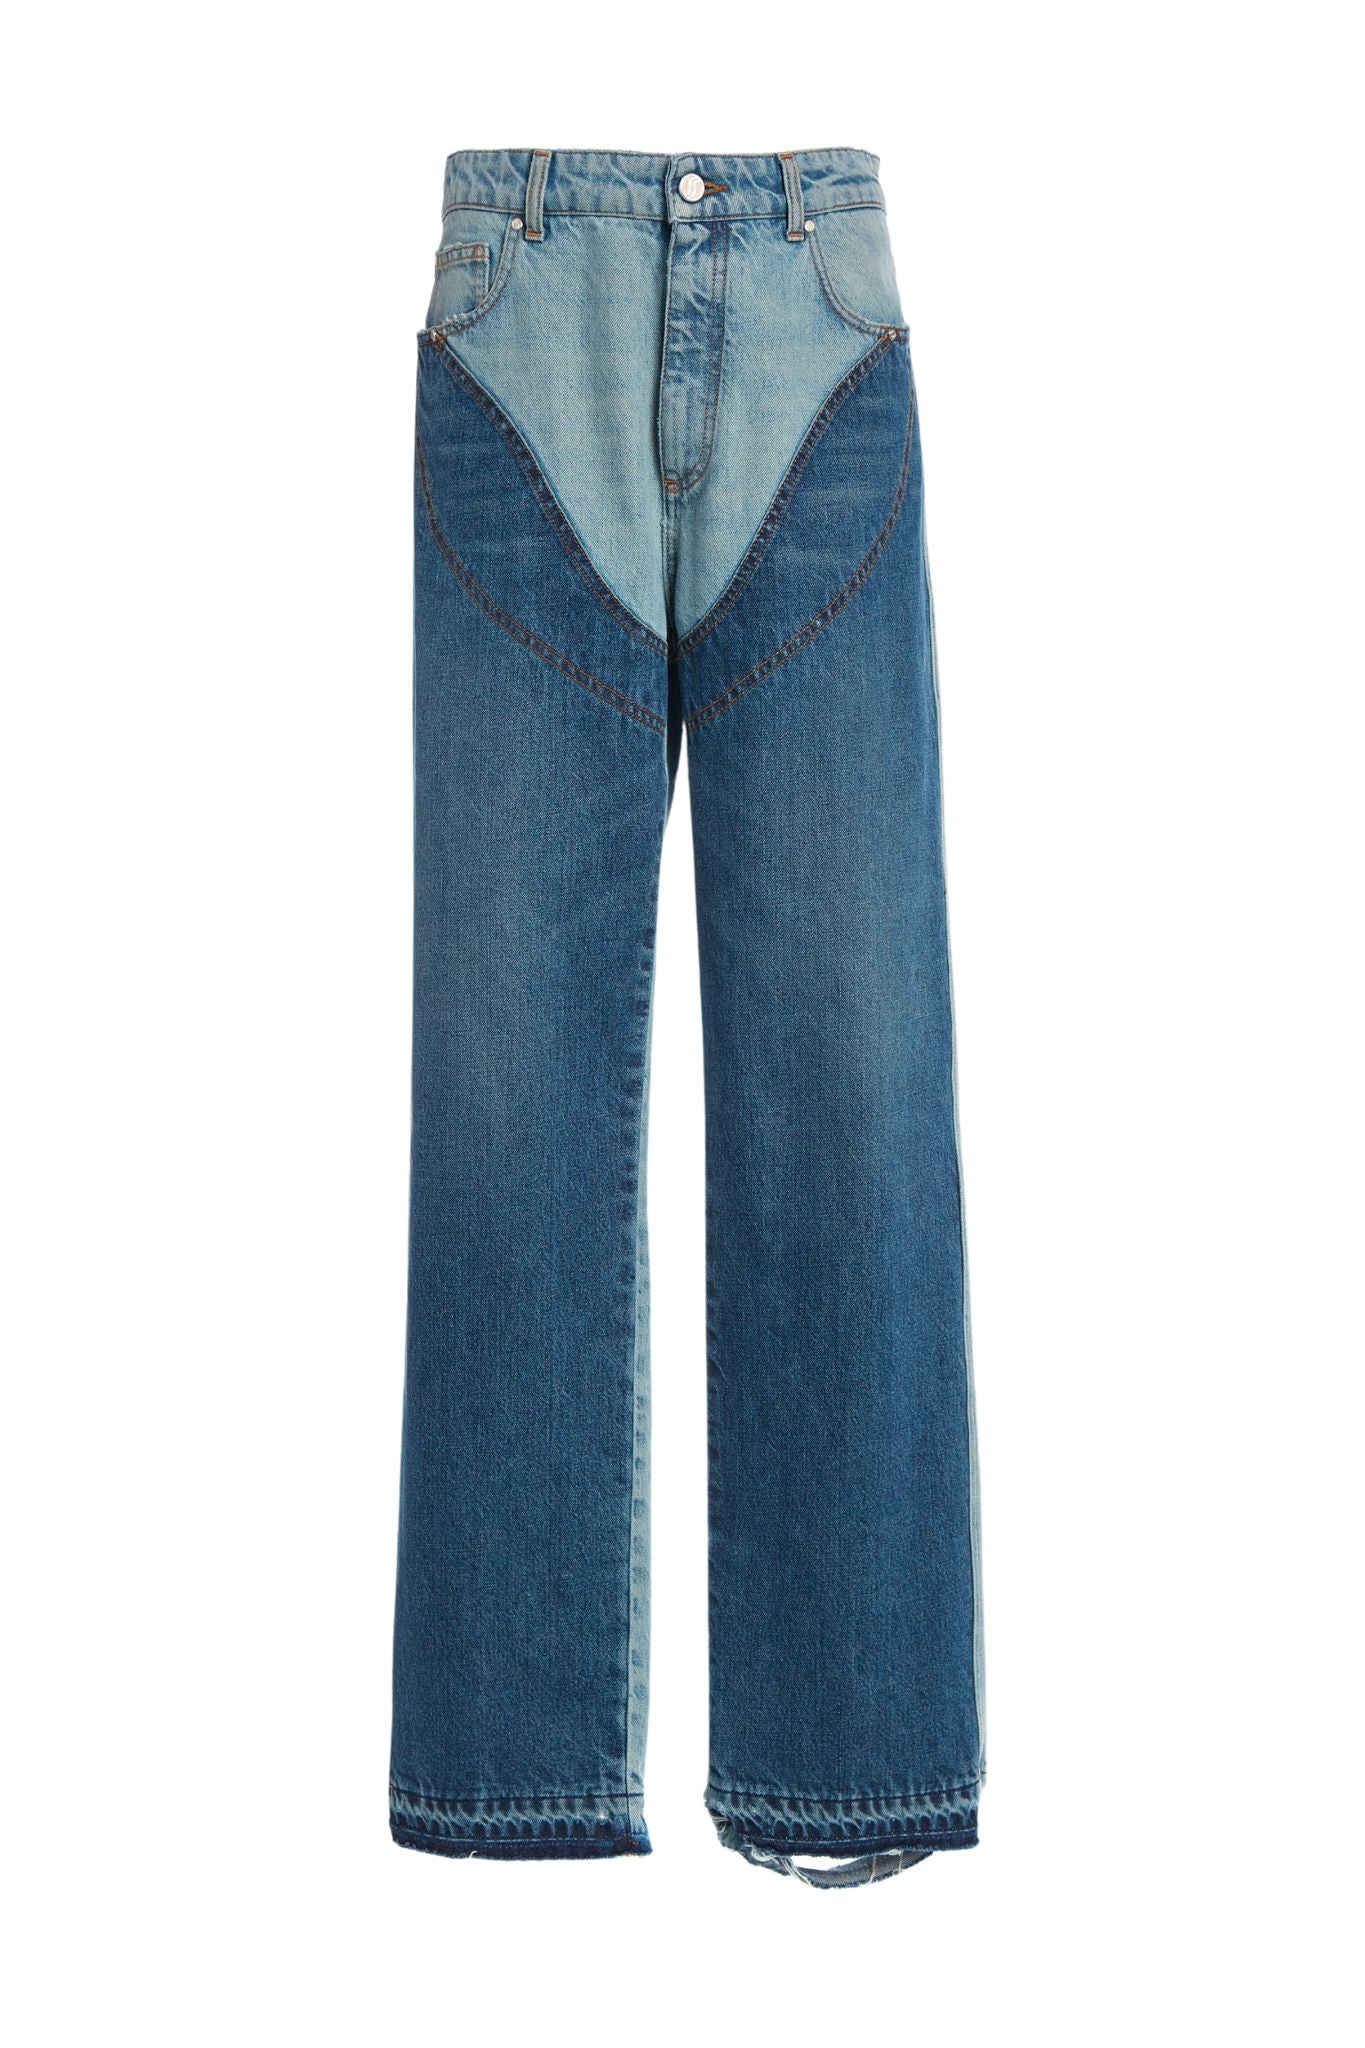 Stella McCartney Vintage Chap Jeans